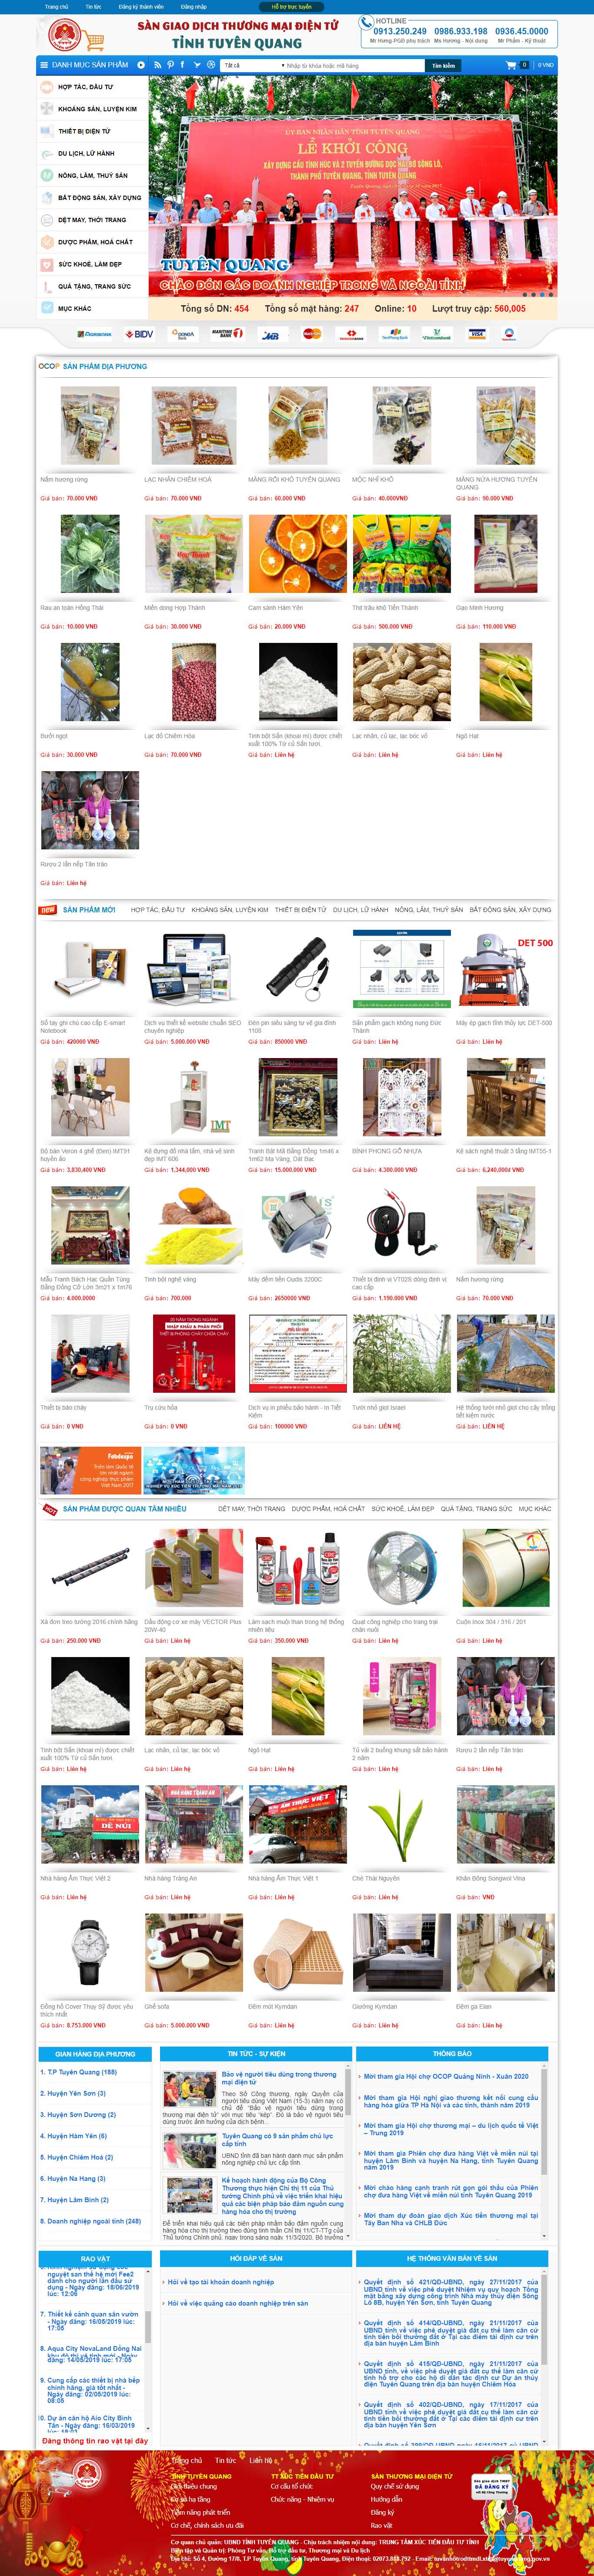 Thiết kế Website sàn thương mại điện tử - santmdttuyenquang.gov.vn